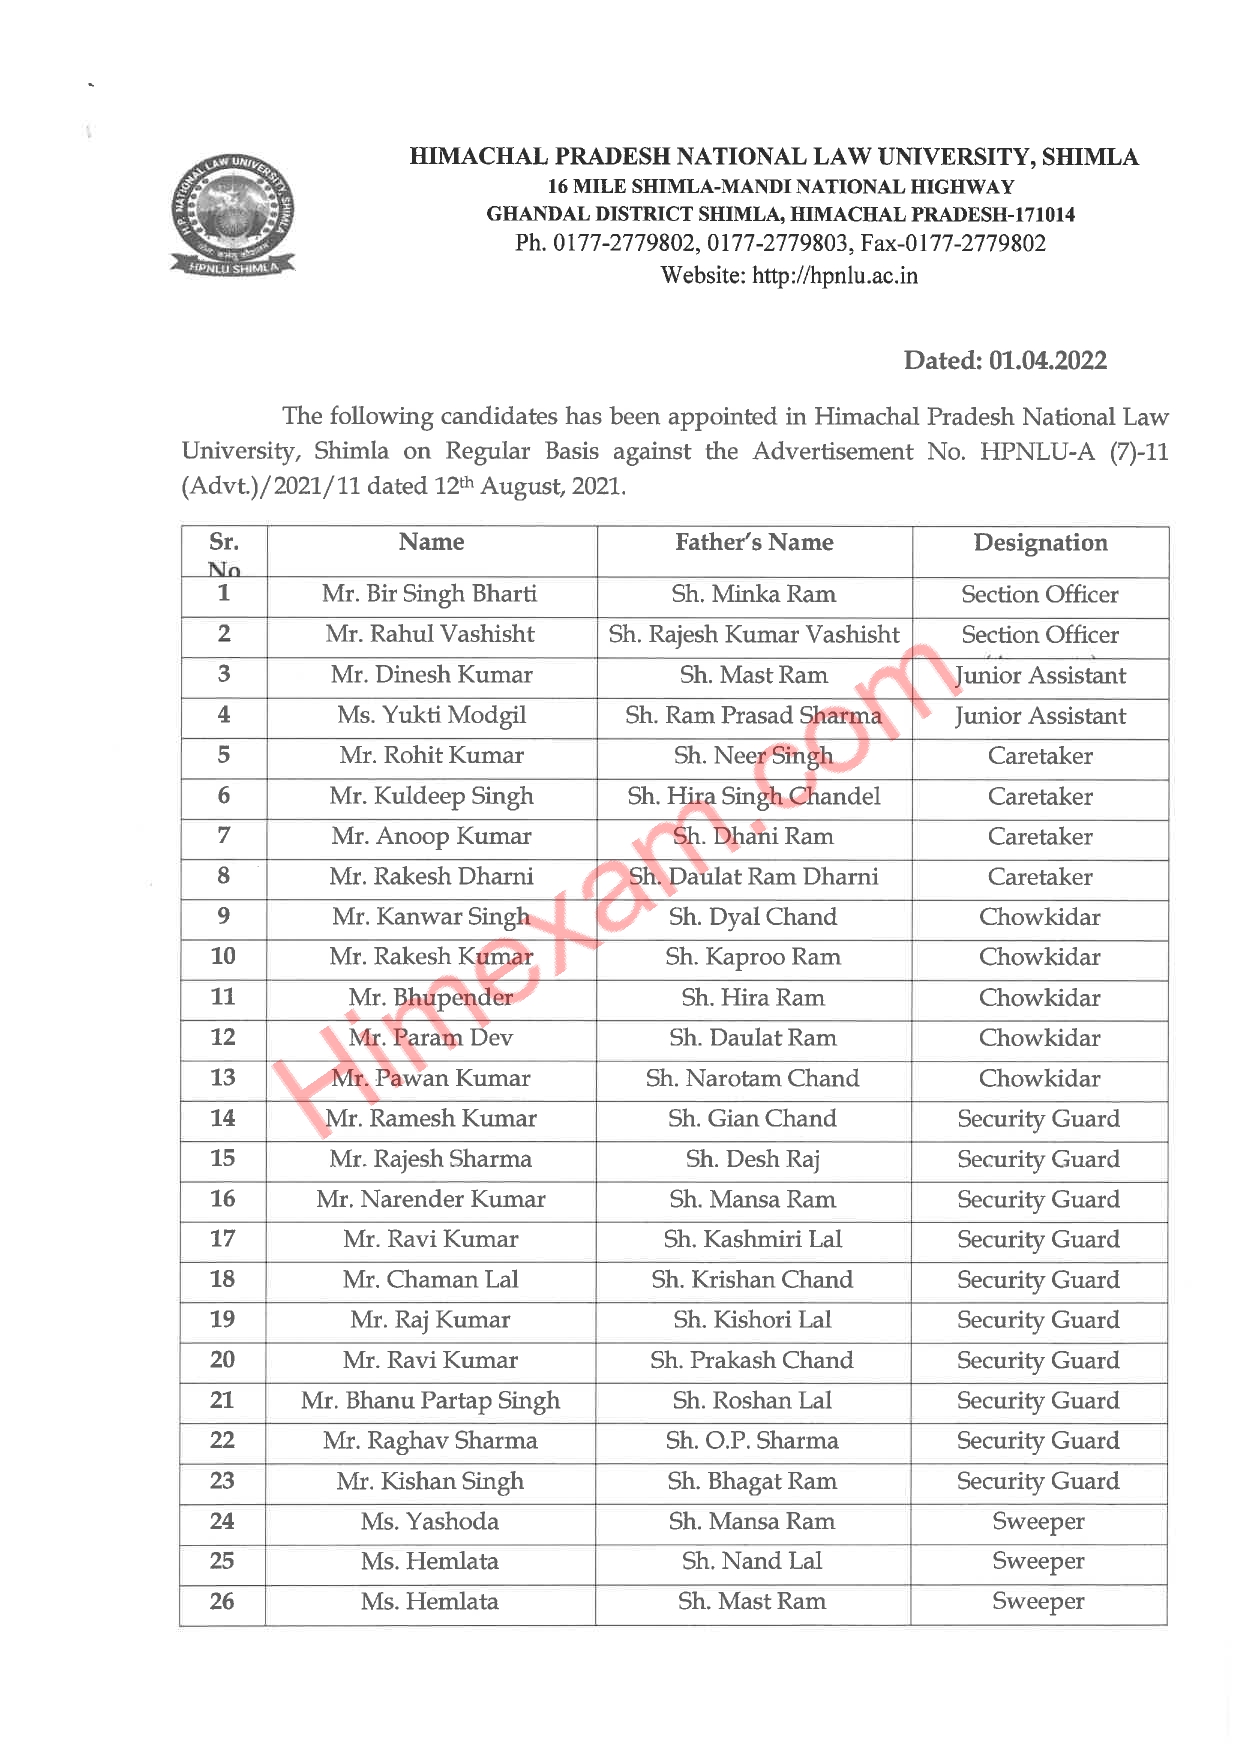 List of selected Candidates on Regular Basis and Contract Basis-HPNLU Shimla